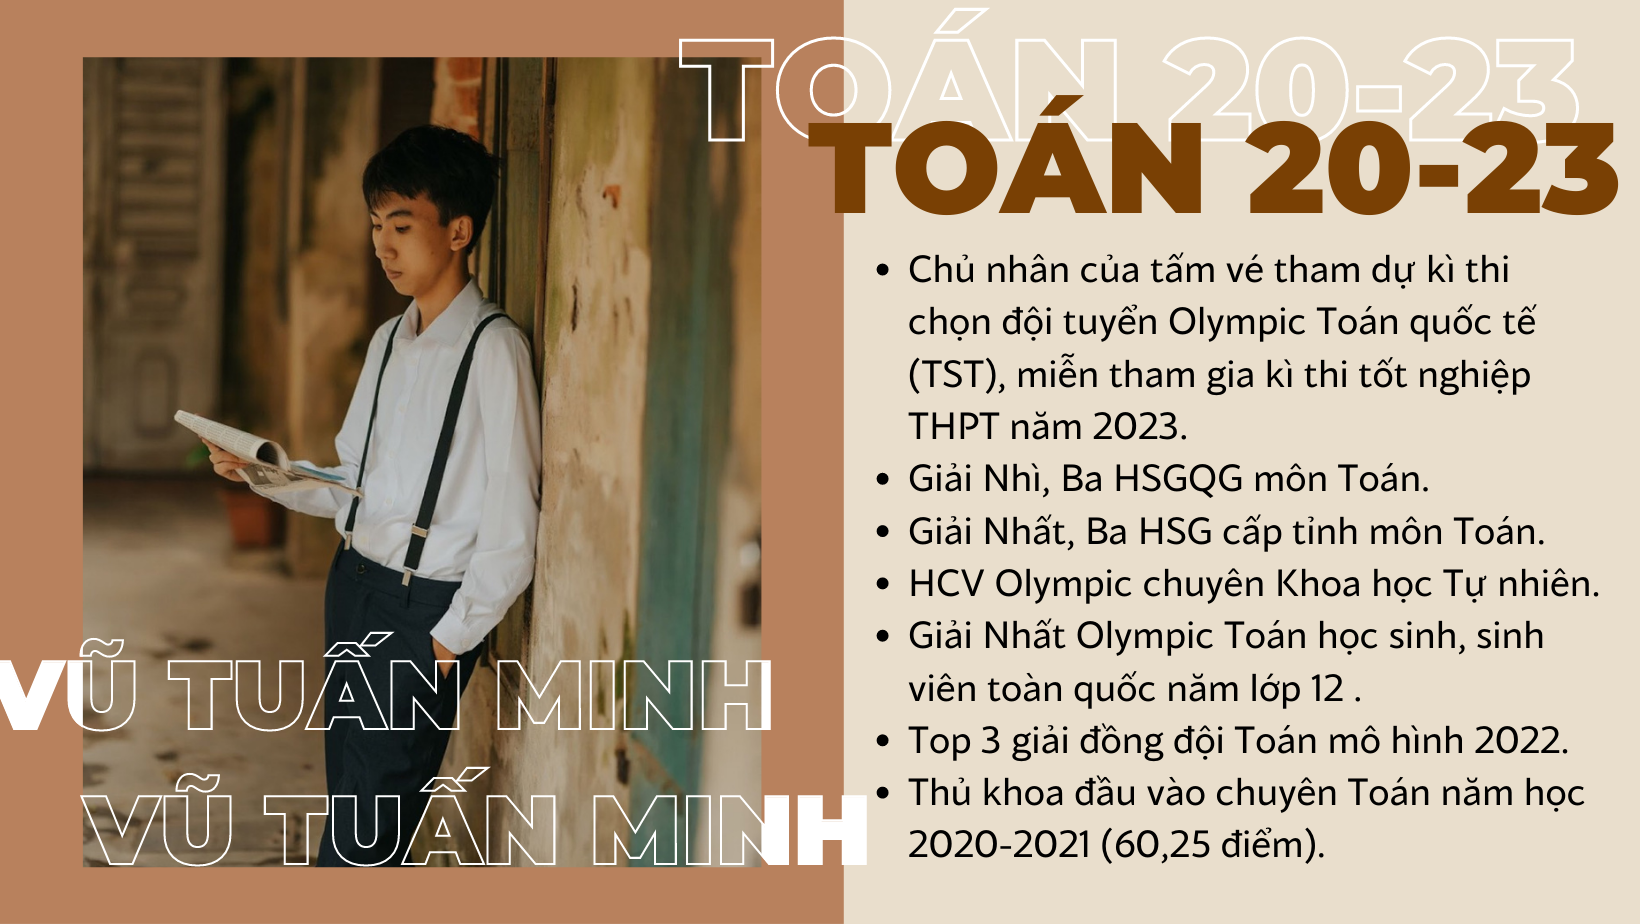 Chuyện trò cùng Vũ Tuấn Minh - chủ nhân của tấm vé tham dự kì thi chọn đội tuyển Olympic Toán quốc tế (TST) năm học 2022-2023